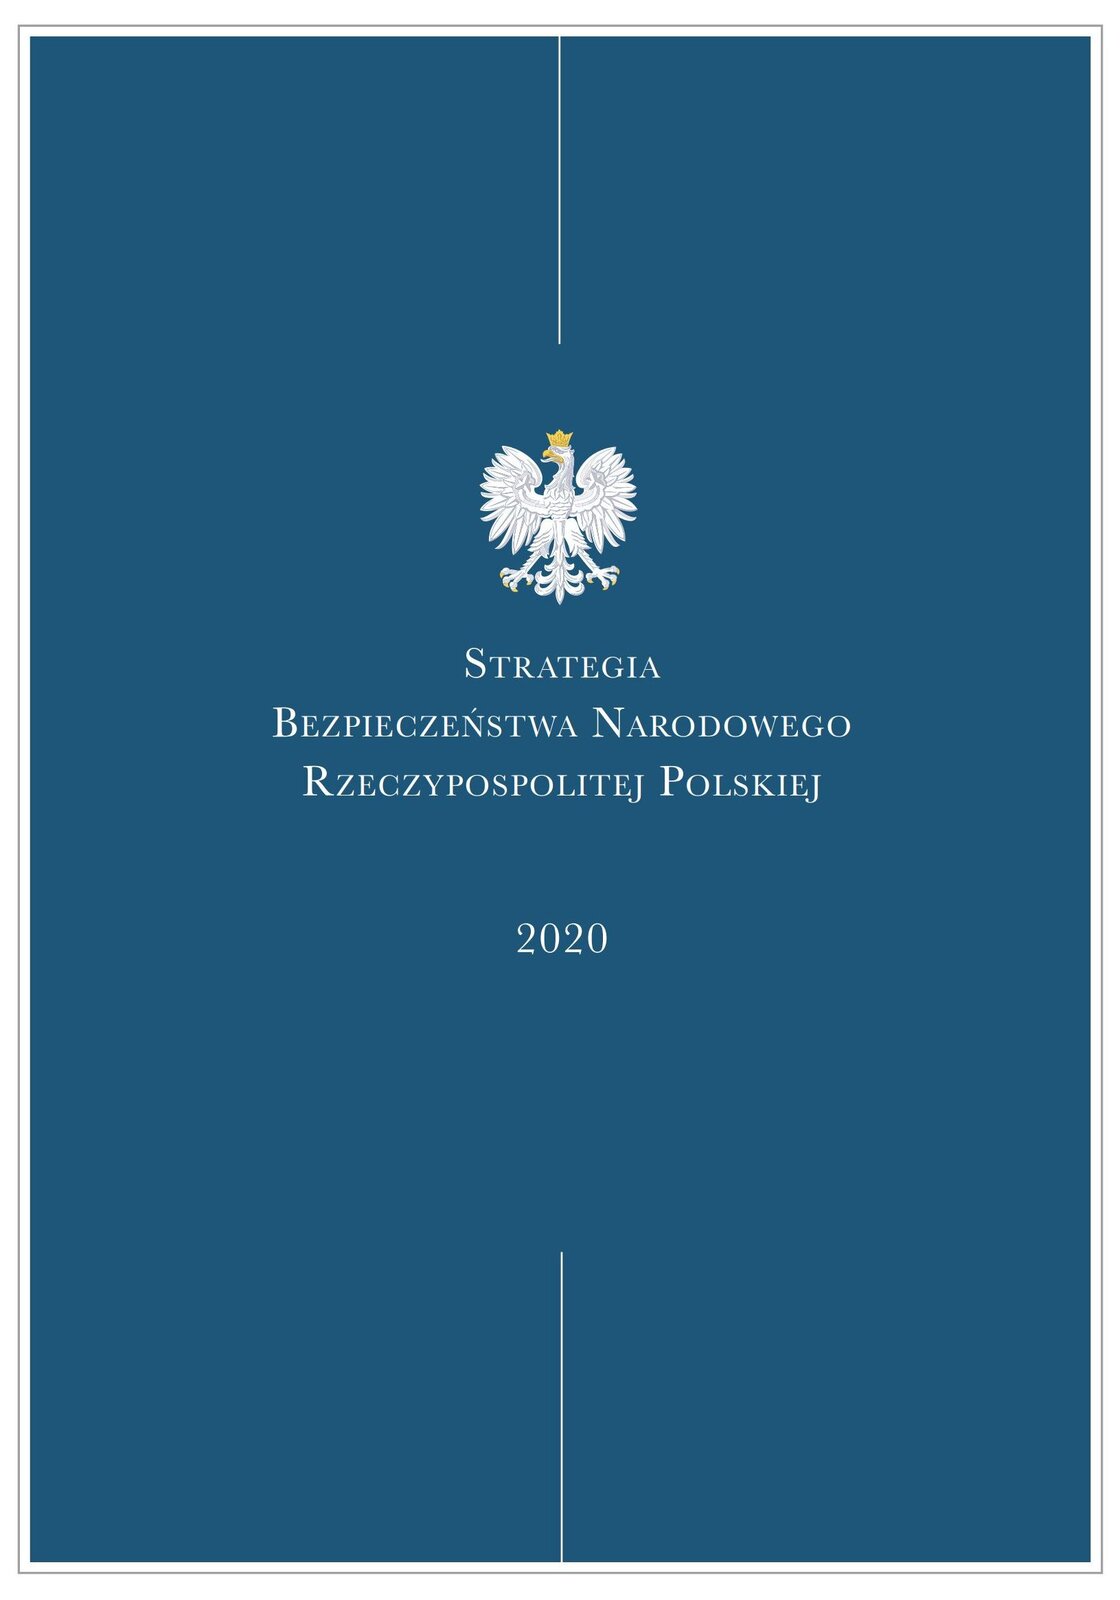 Ilustracja pierwszej strony tytułowej Strategii Bezpieczeństwa Narodowego Rzeczypospolitej Polskiej z 2020 roku. Biały orzeł w złotej koronie na niebieskim tle. Tytuł w kolorze białym.